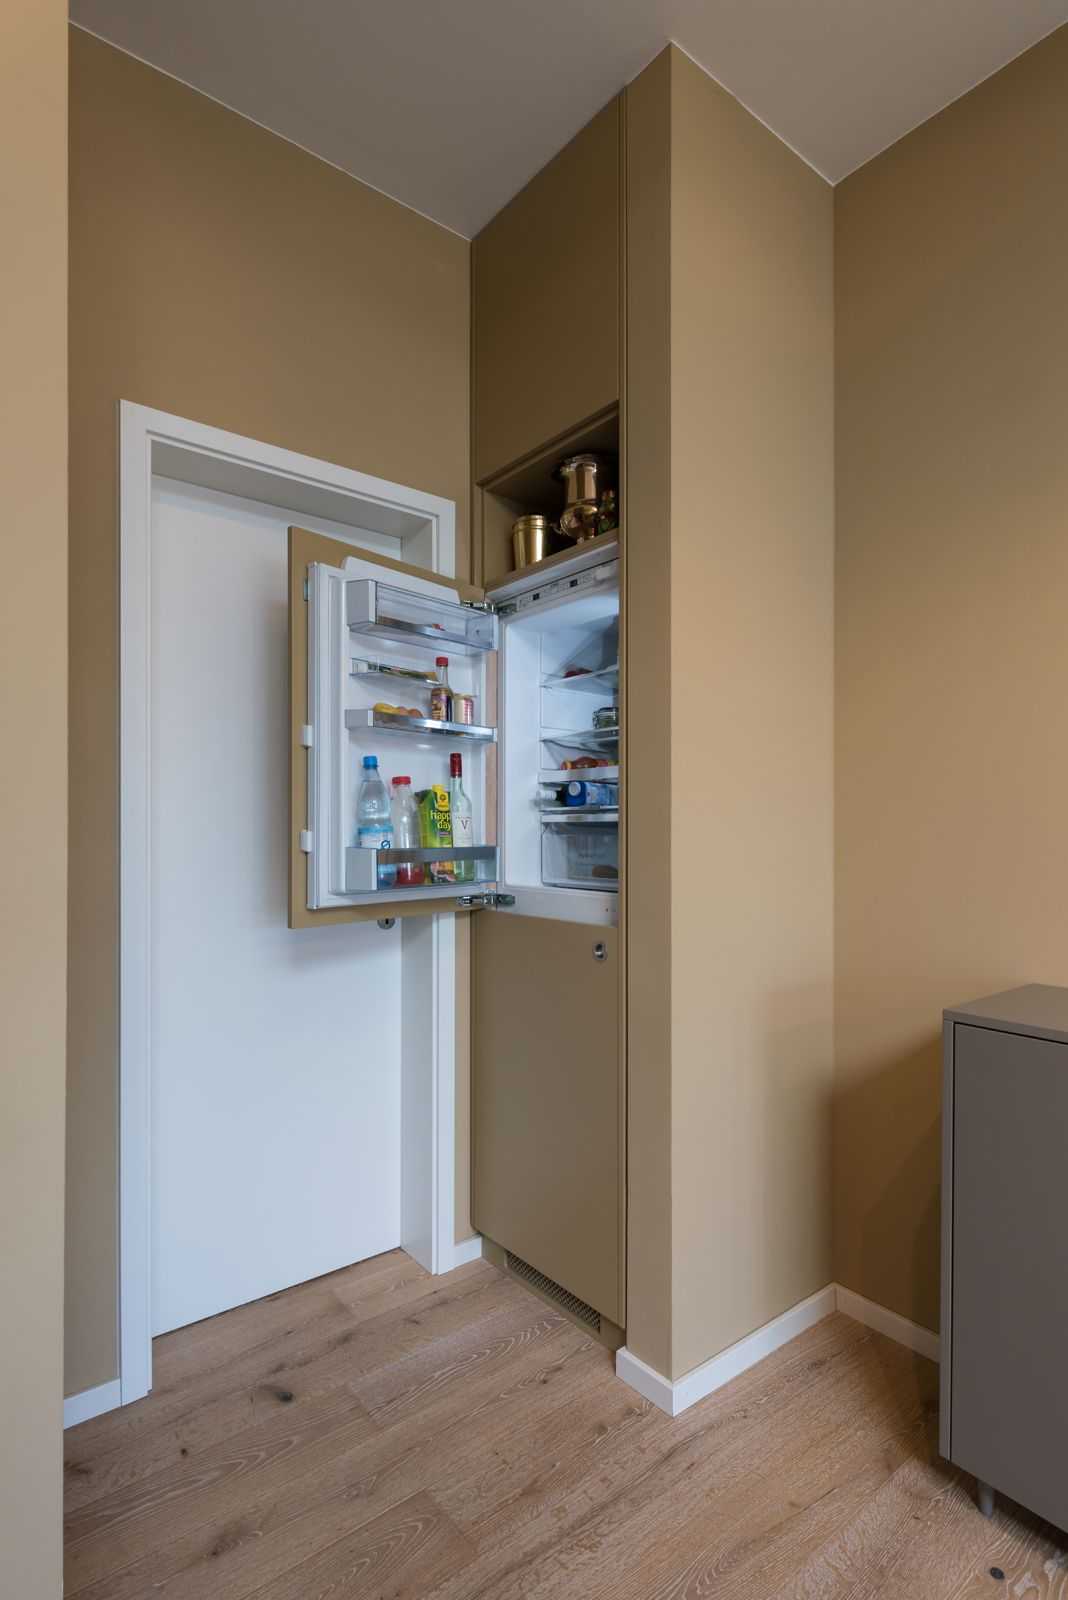 Холодильник в прихожей  примеры как спрятать в шкафу Важные нюансы при установке встроенных моделей, выбор размера конструкций Фотографии интересных идей оформления интерьера комнаты